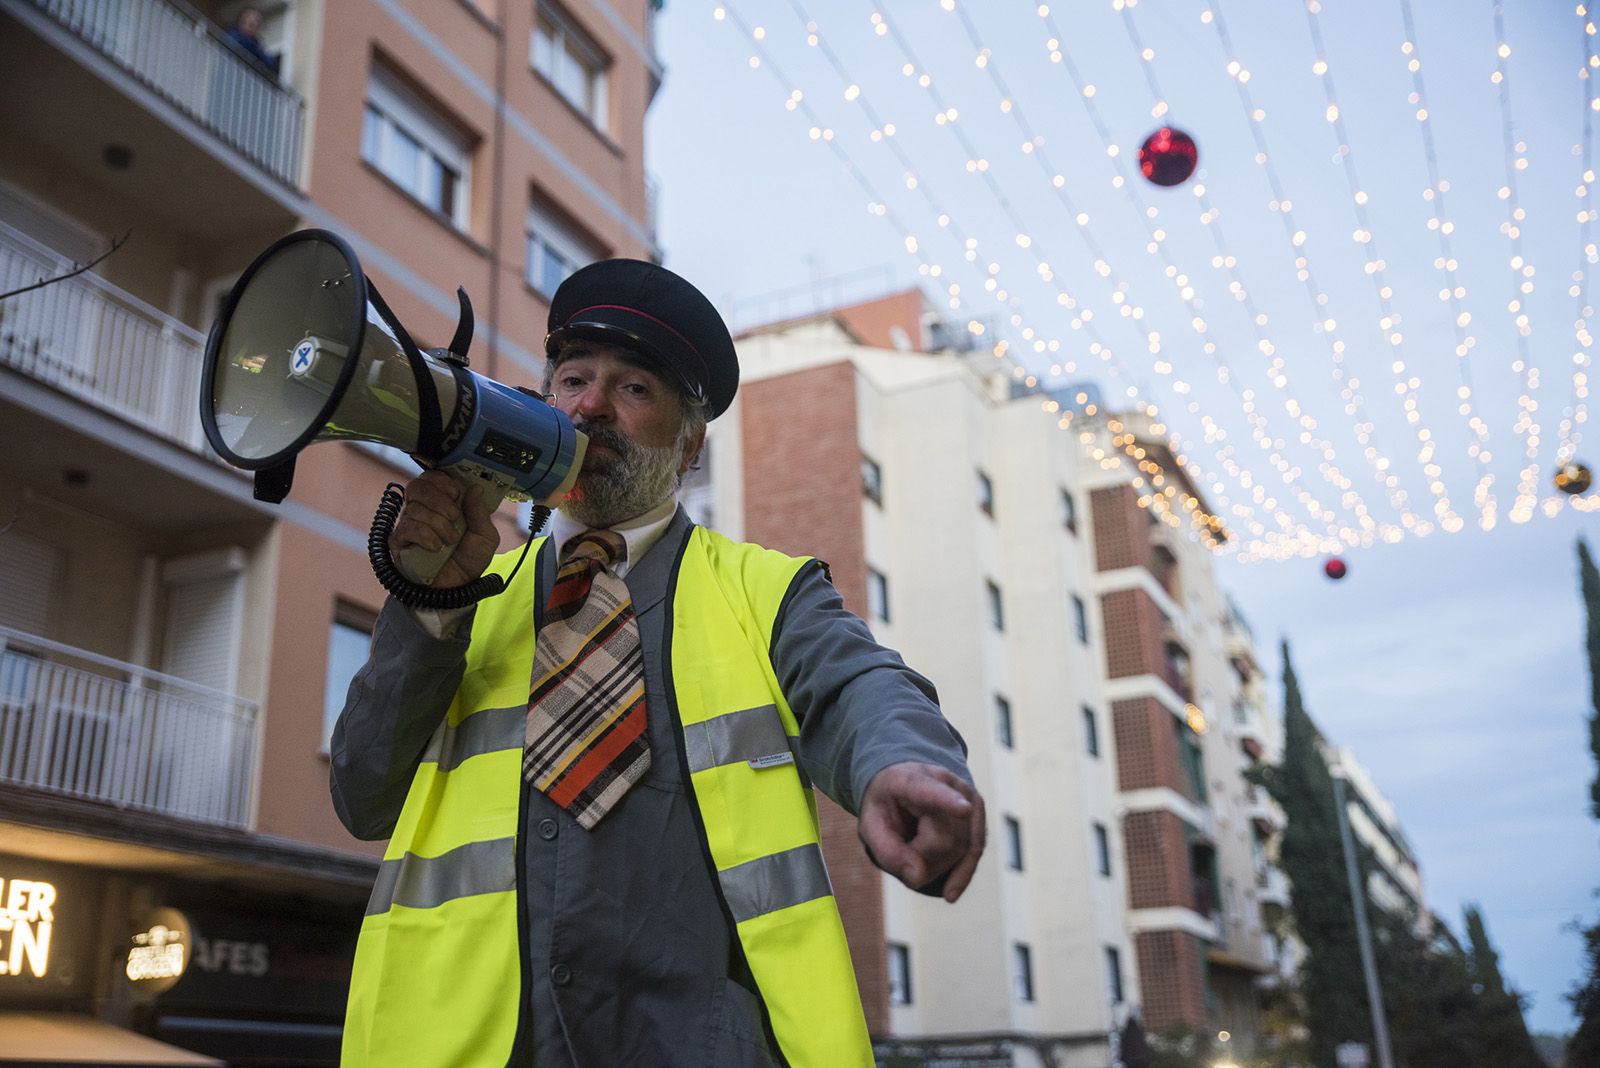 Personatges itinerants de Nadal a l'Avinguda Cerdanyola. FOTO: Bernat Millet.